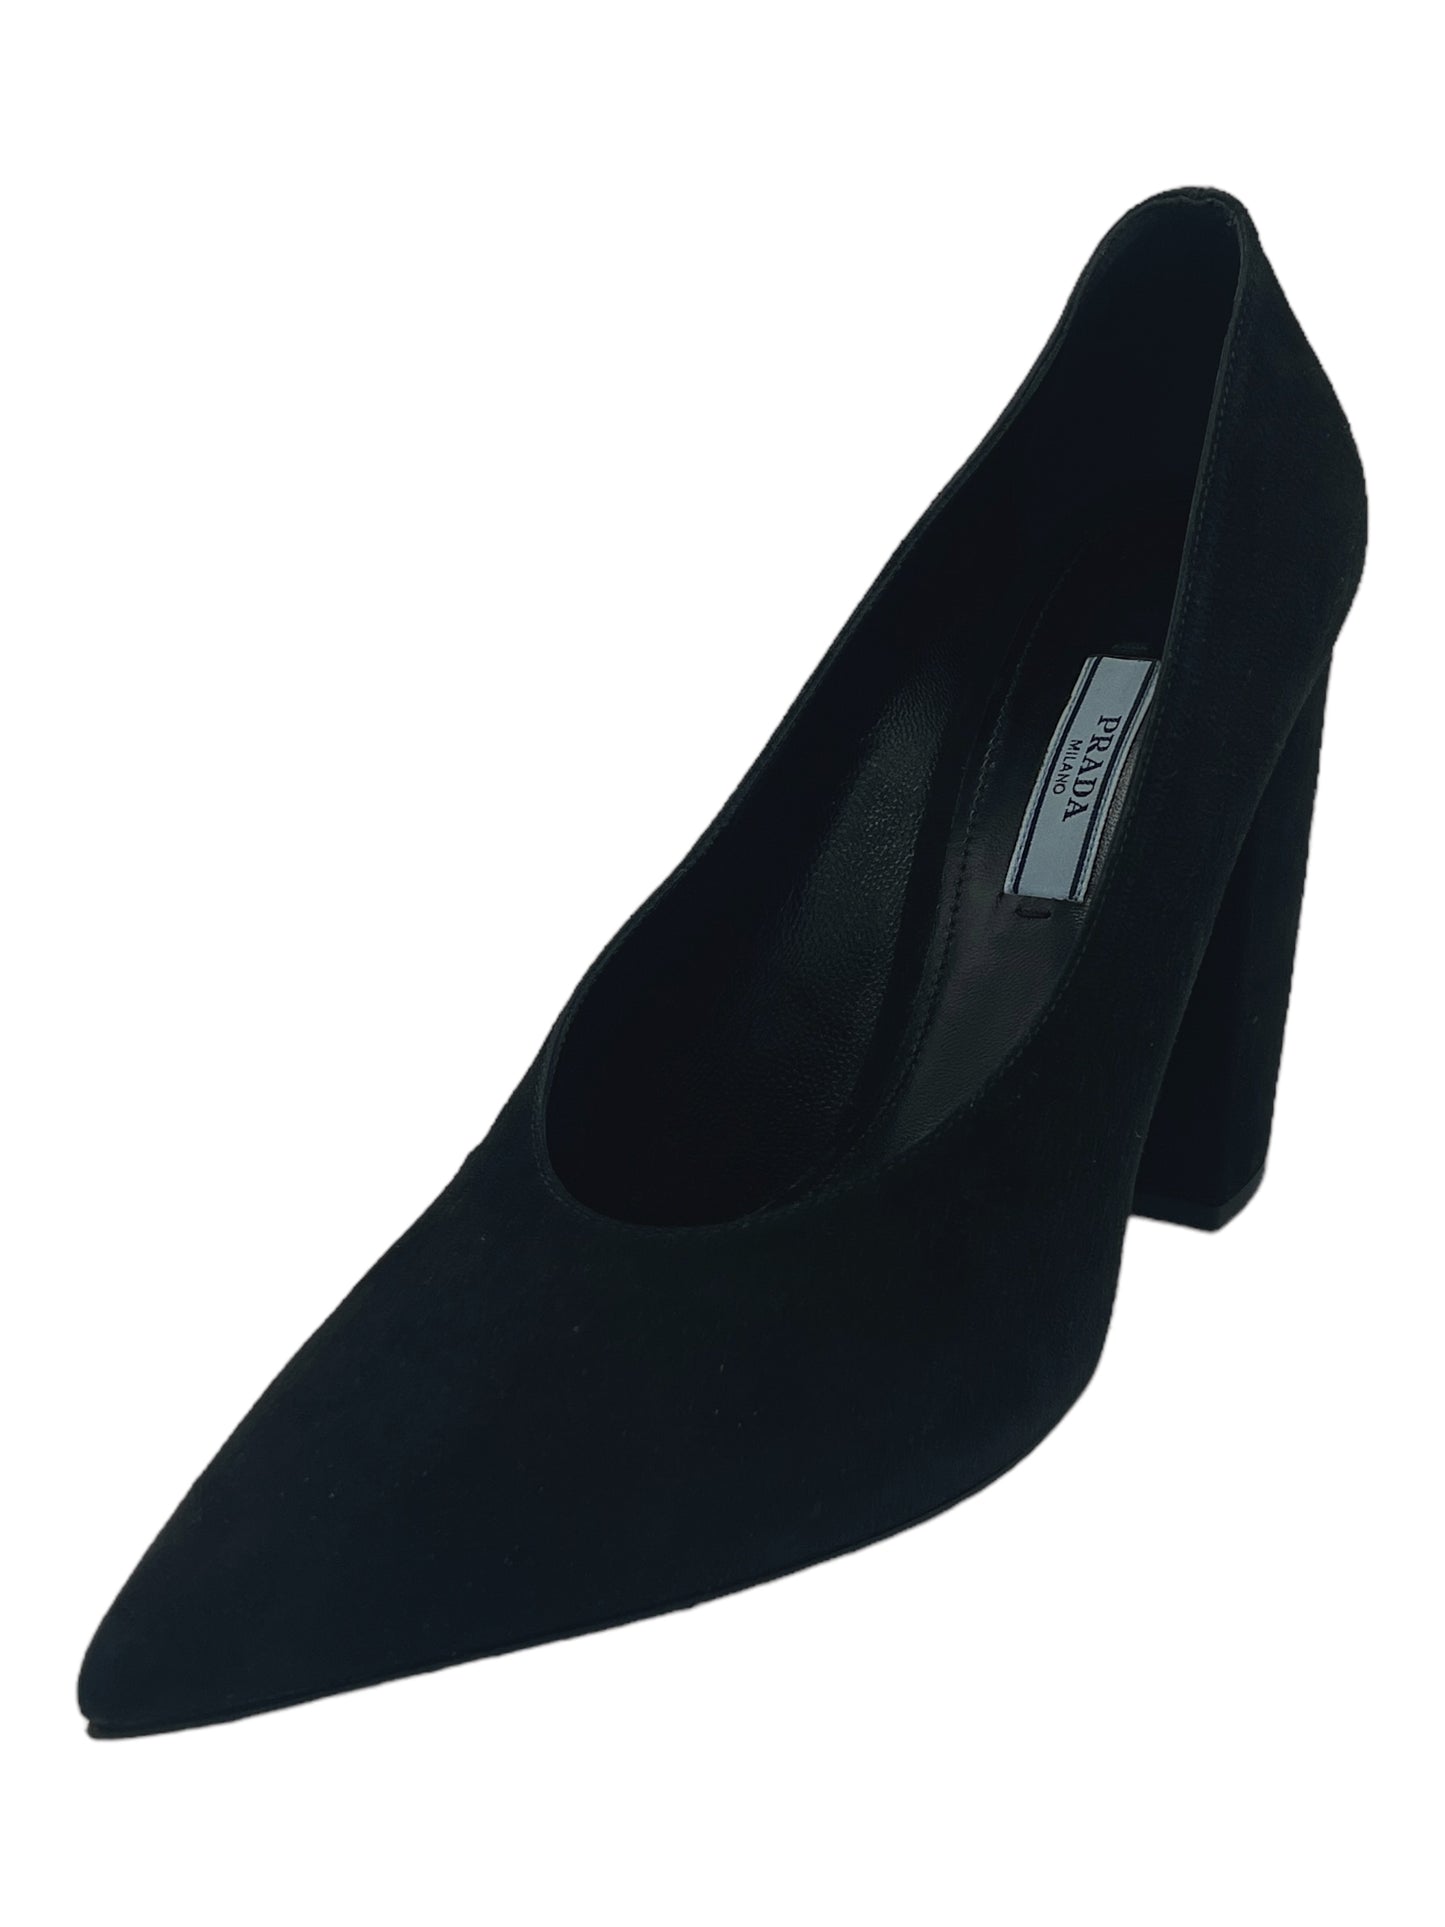 Prada Black Suede Pointed Toe High Heels 8 W